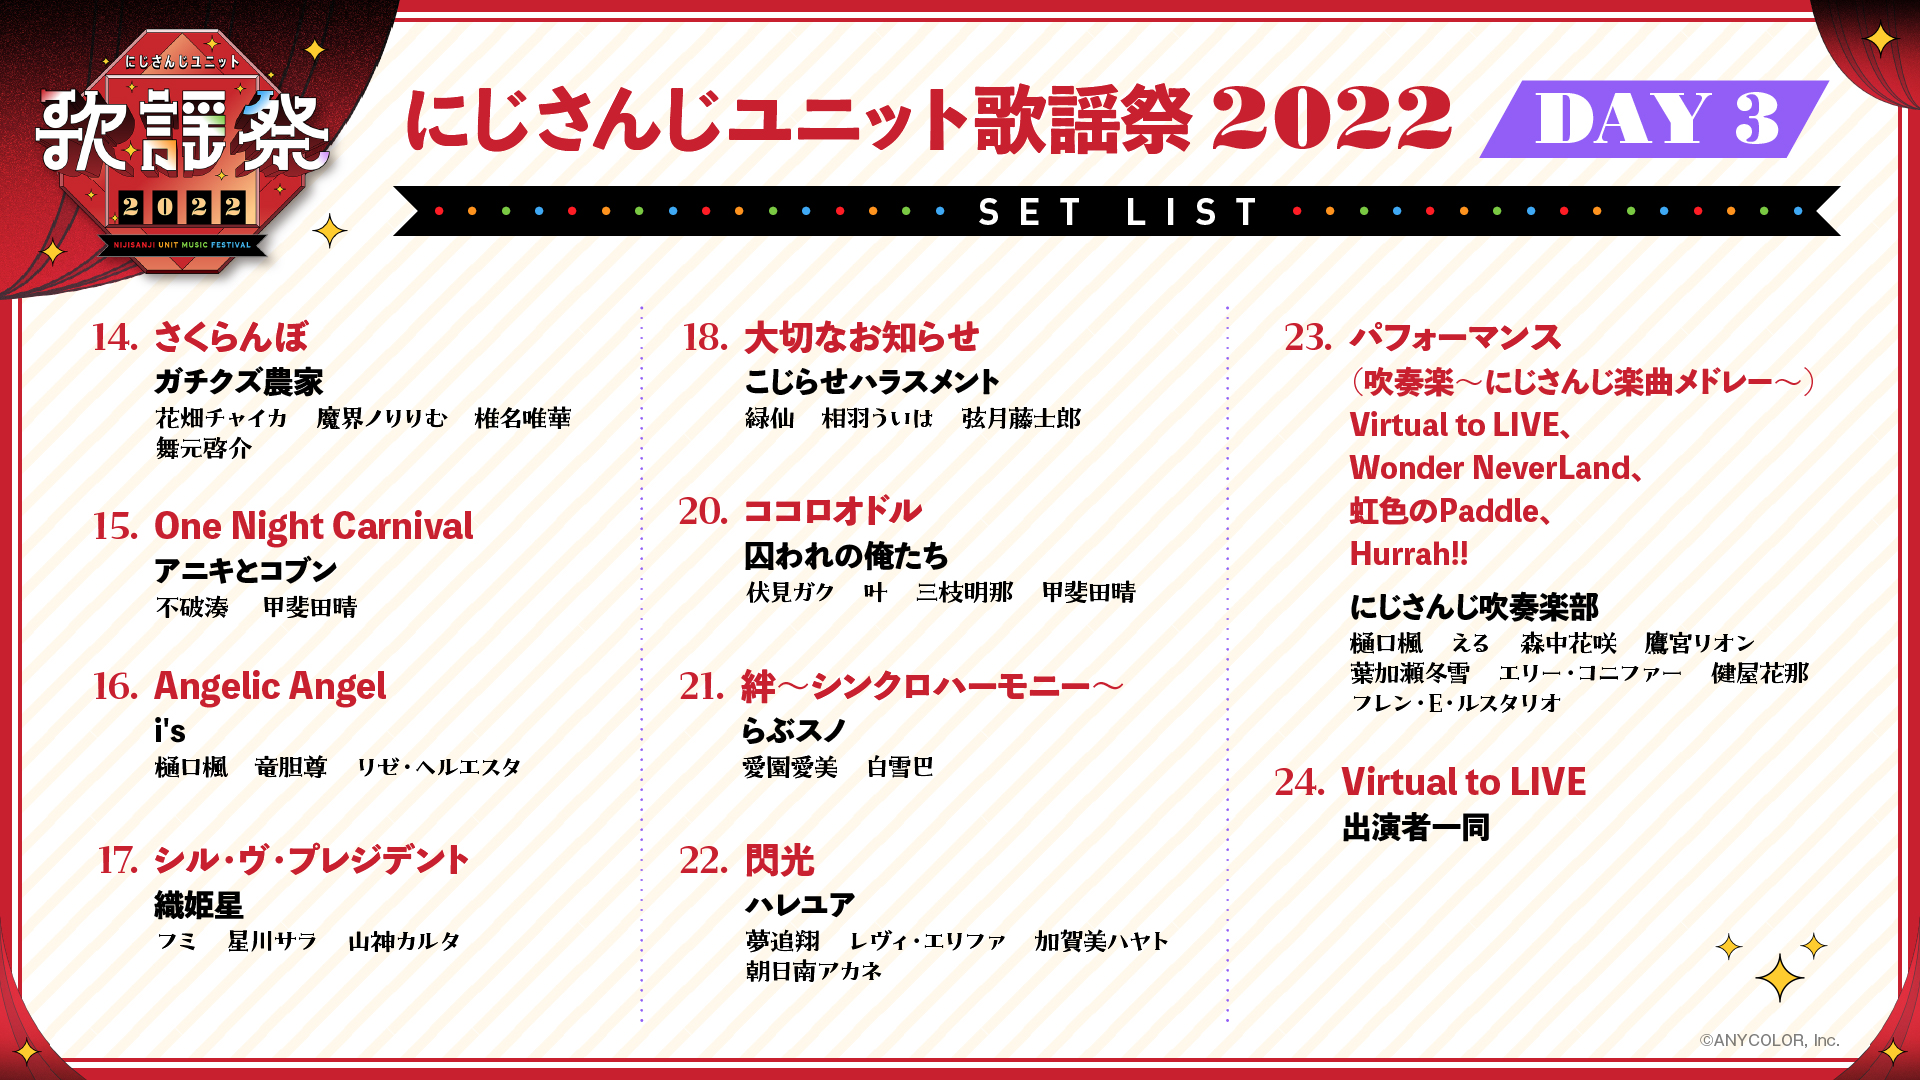 にじさんじユニット歌謡祭2022セットリスト DAY3-2